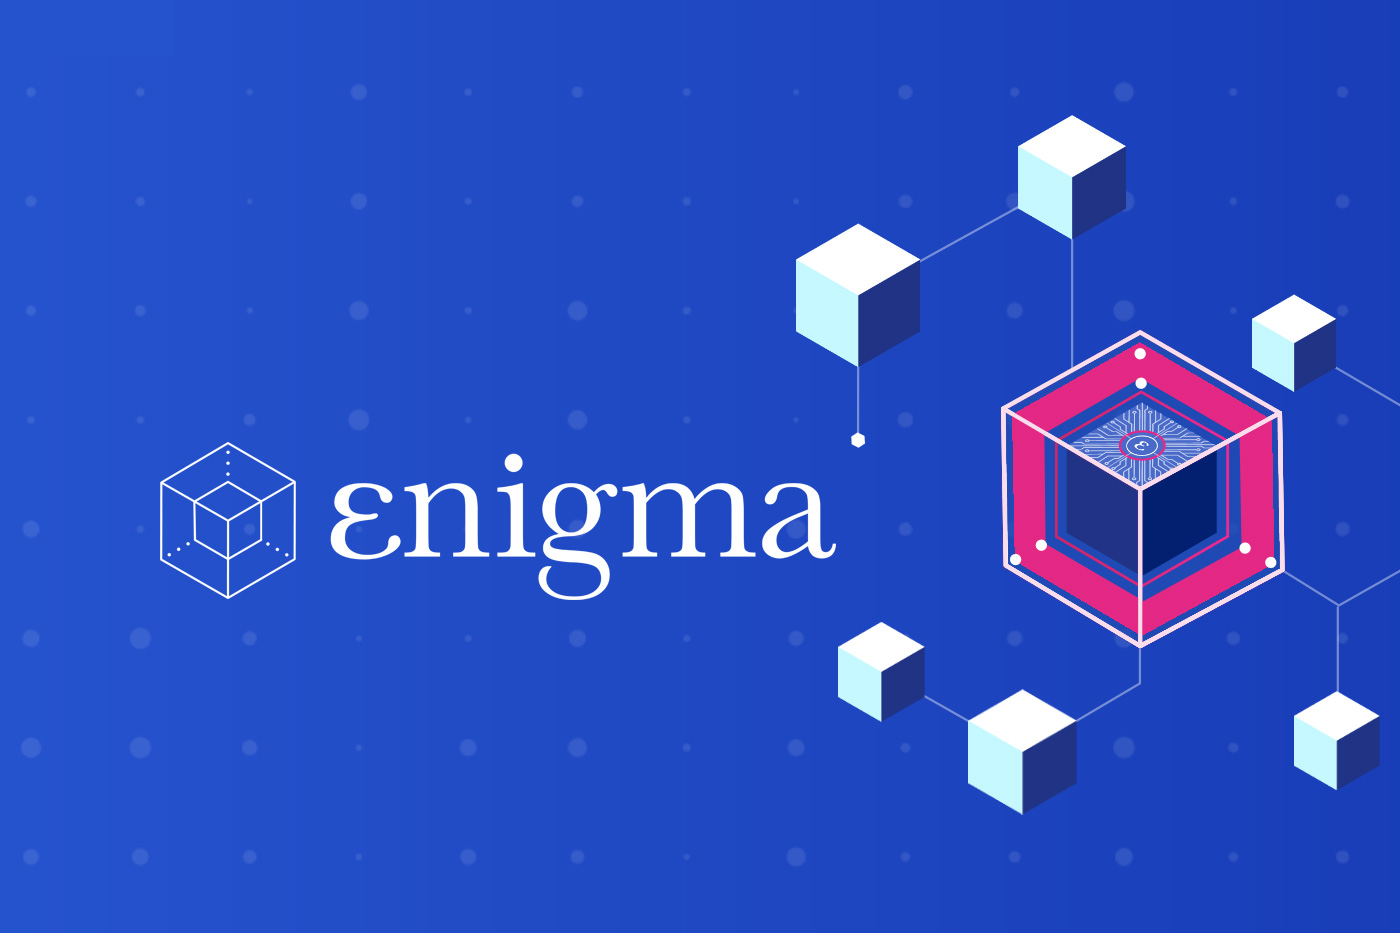 Co to jest Enigma?